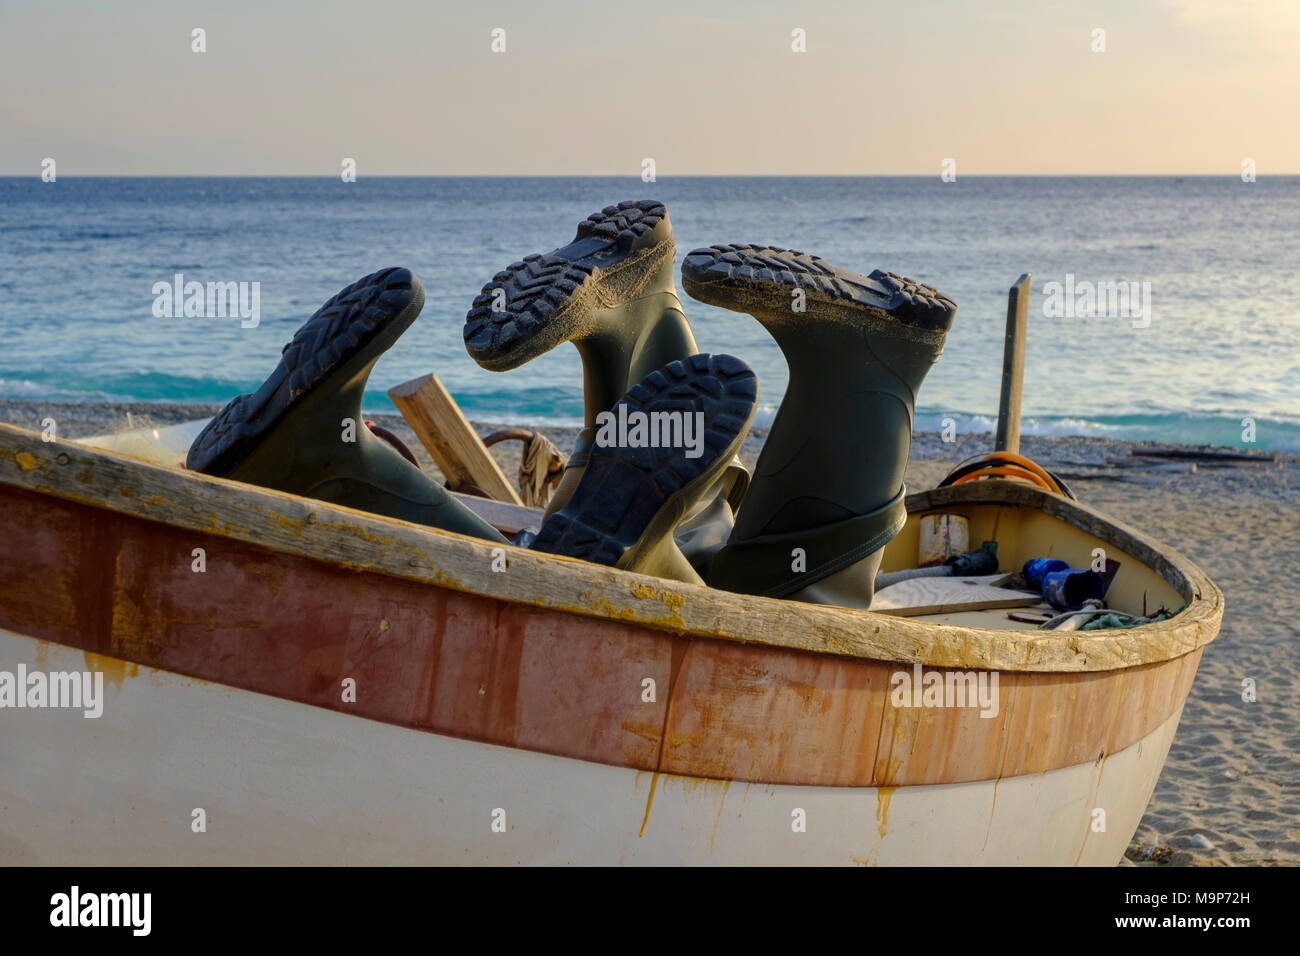 Stivali di gomma in una barca da pesca sulla spiaggia, Noli, la Riviera di  Ponente, Liguria, Italia Foto stock - Alamy